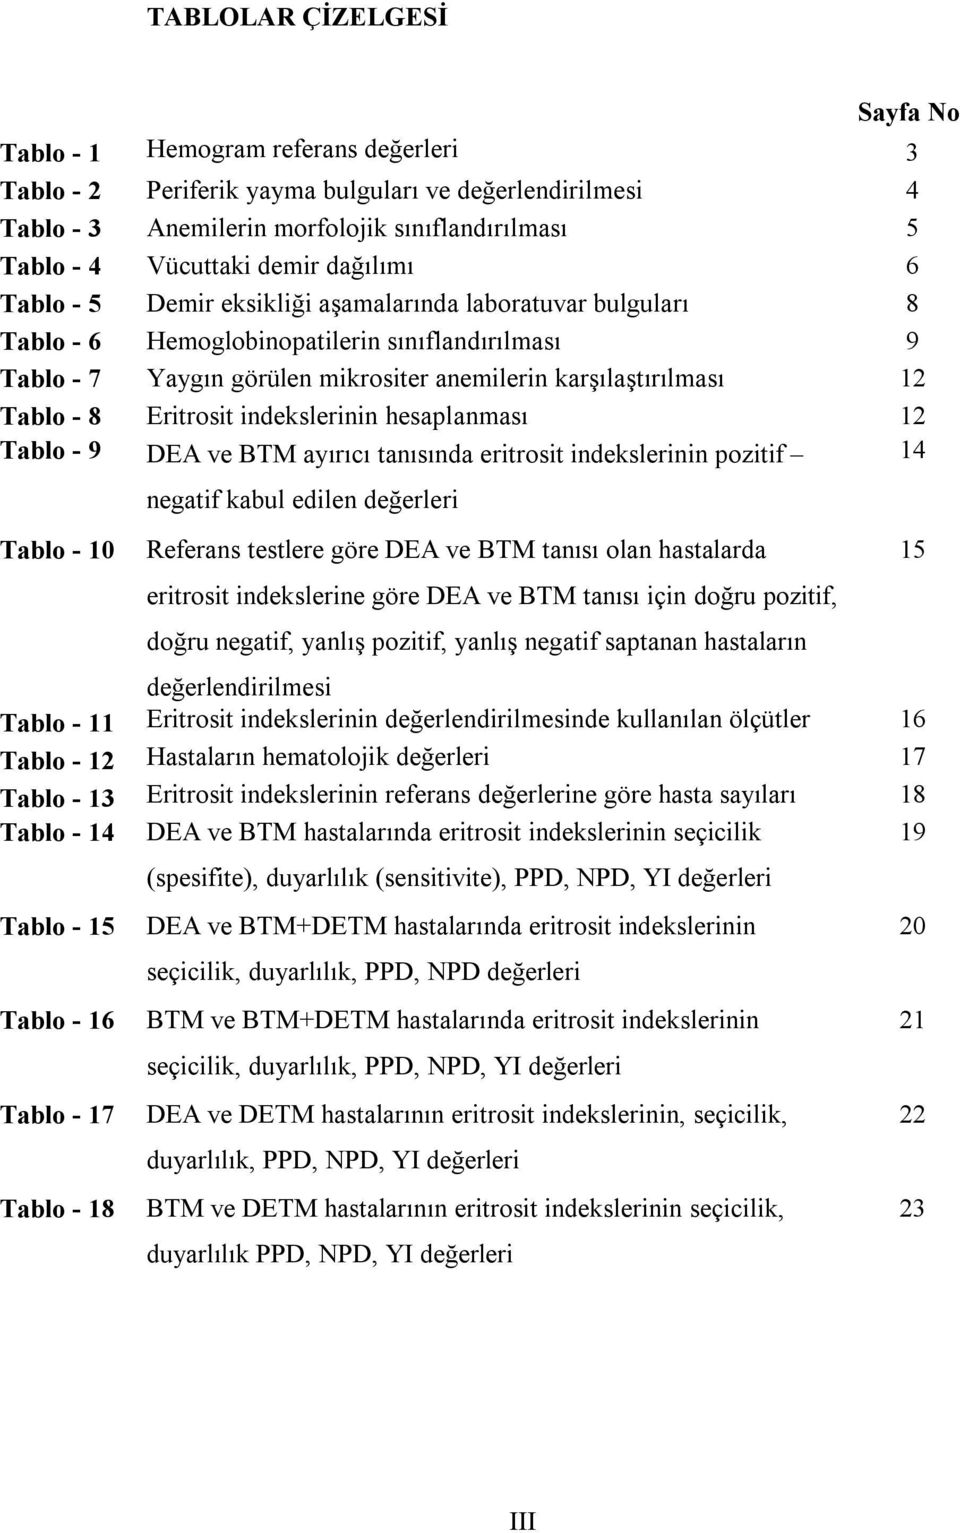 Tablo - 8 Eritrosit indekslerinin hesaplanması 12 Tablo - 9 DEA ve BTM ayırıcı tanısında eritrosit indekslerinin pozitif 14 Tablo - 10 negatif kabul edilen değerleri Referans testlere göre DEA ve BTM